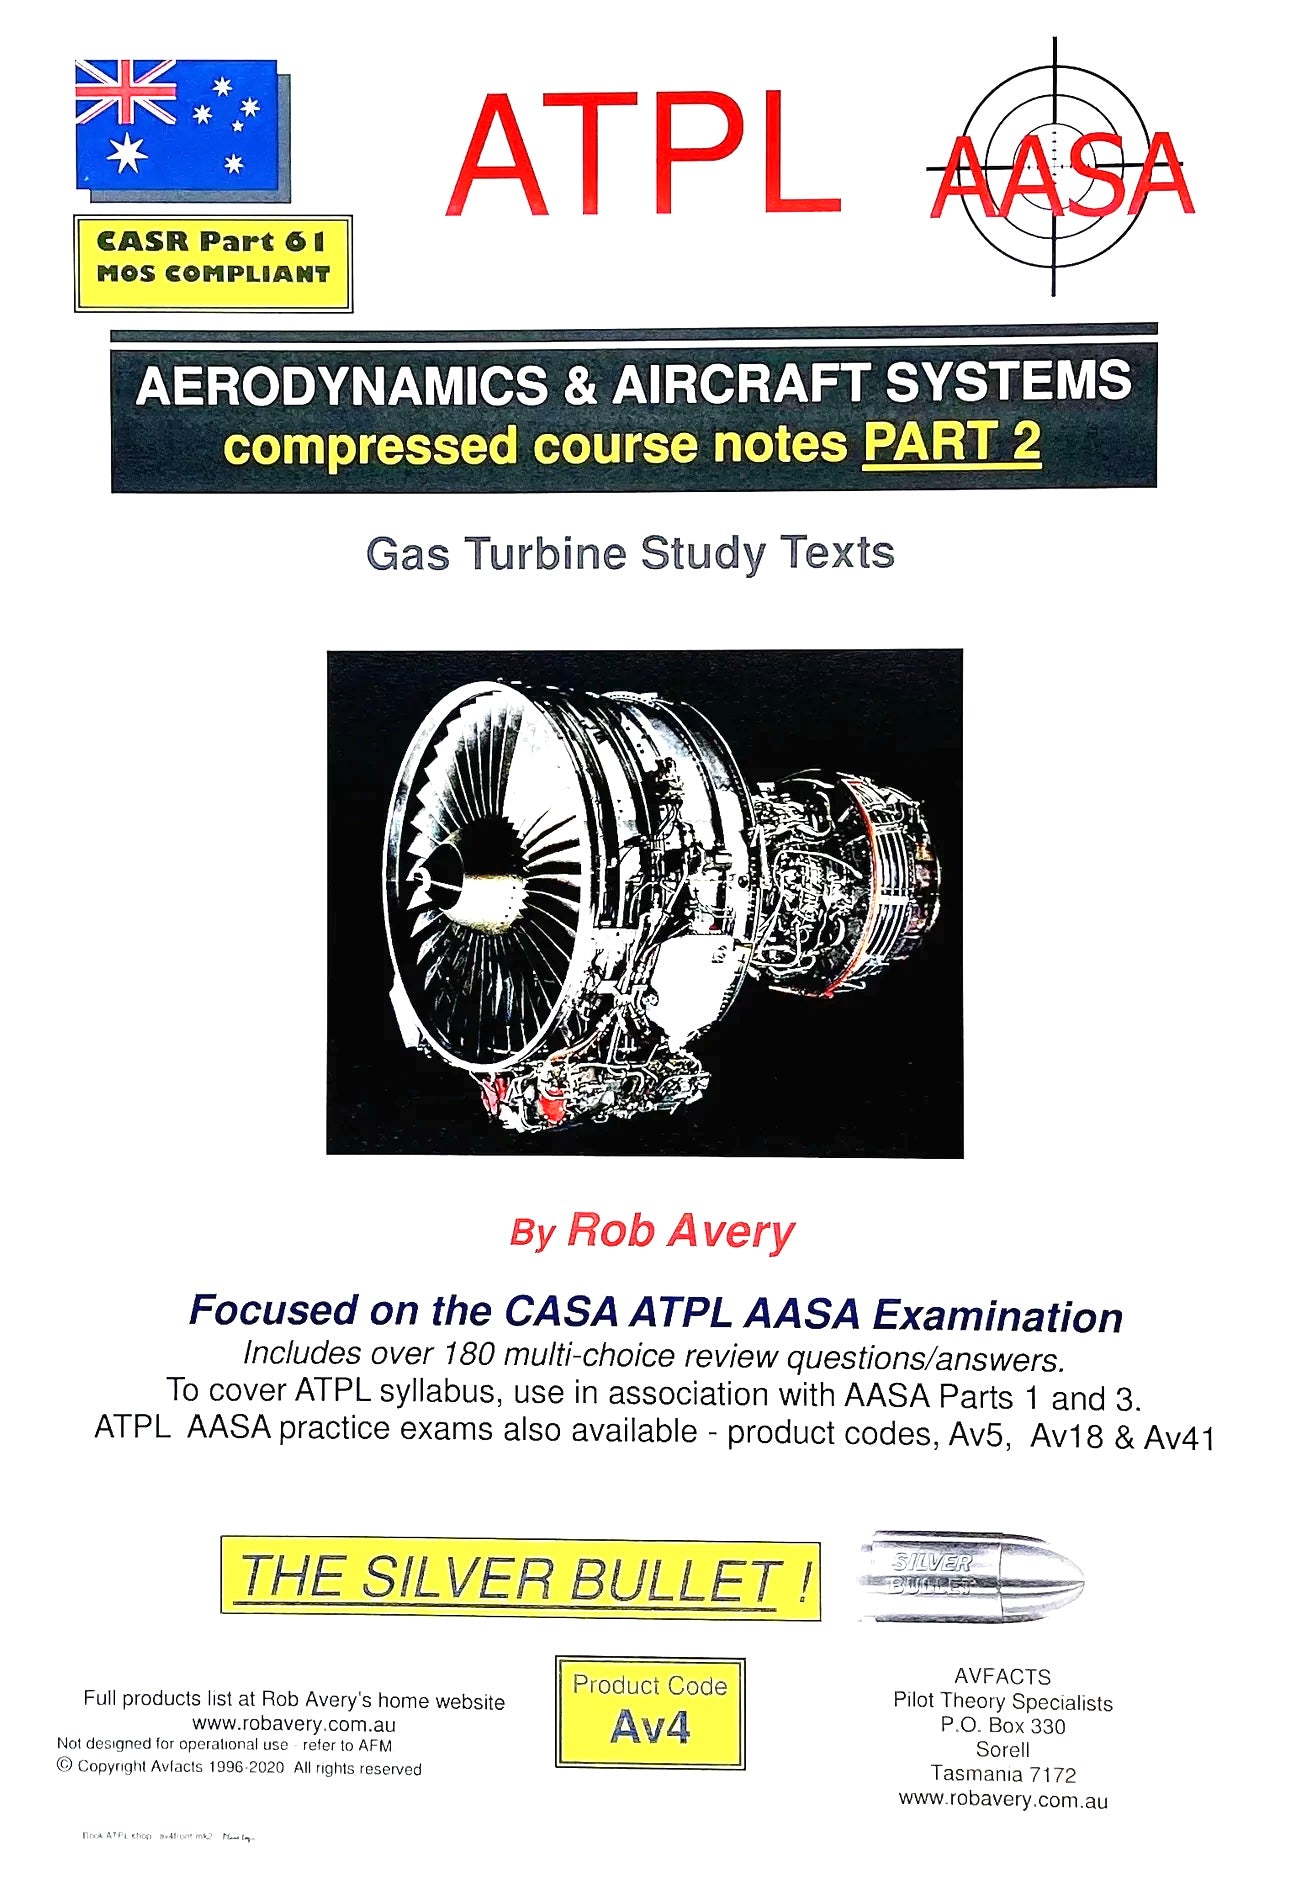 Avfacts by Rob Avery ATPL Aerodynamics & Systems Part 2 - AV4